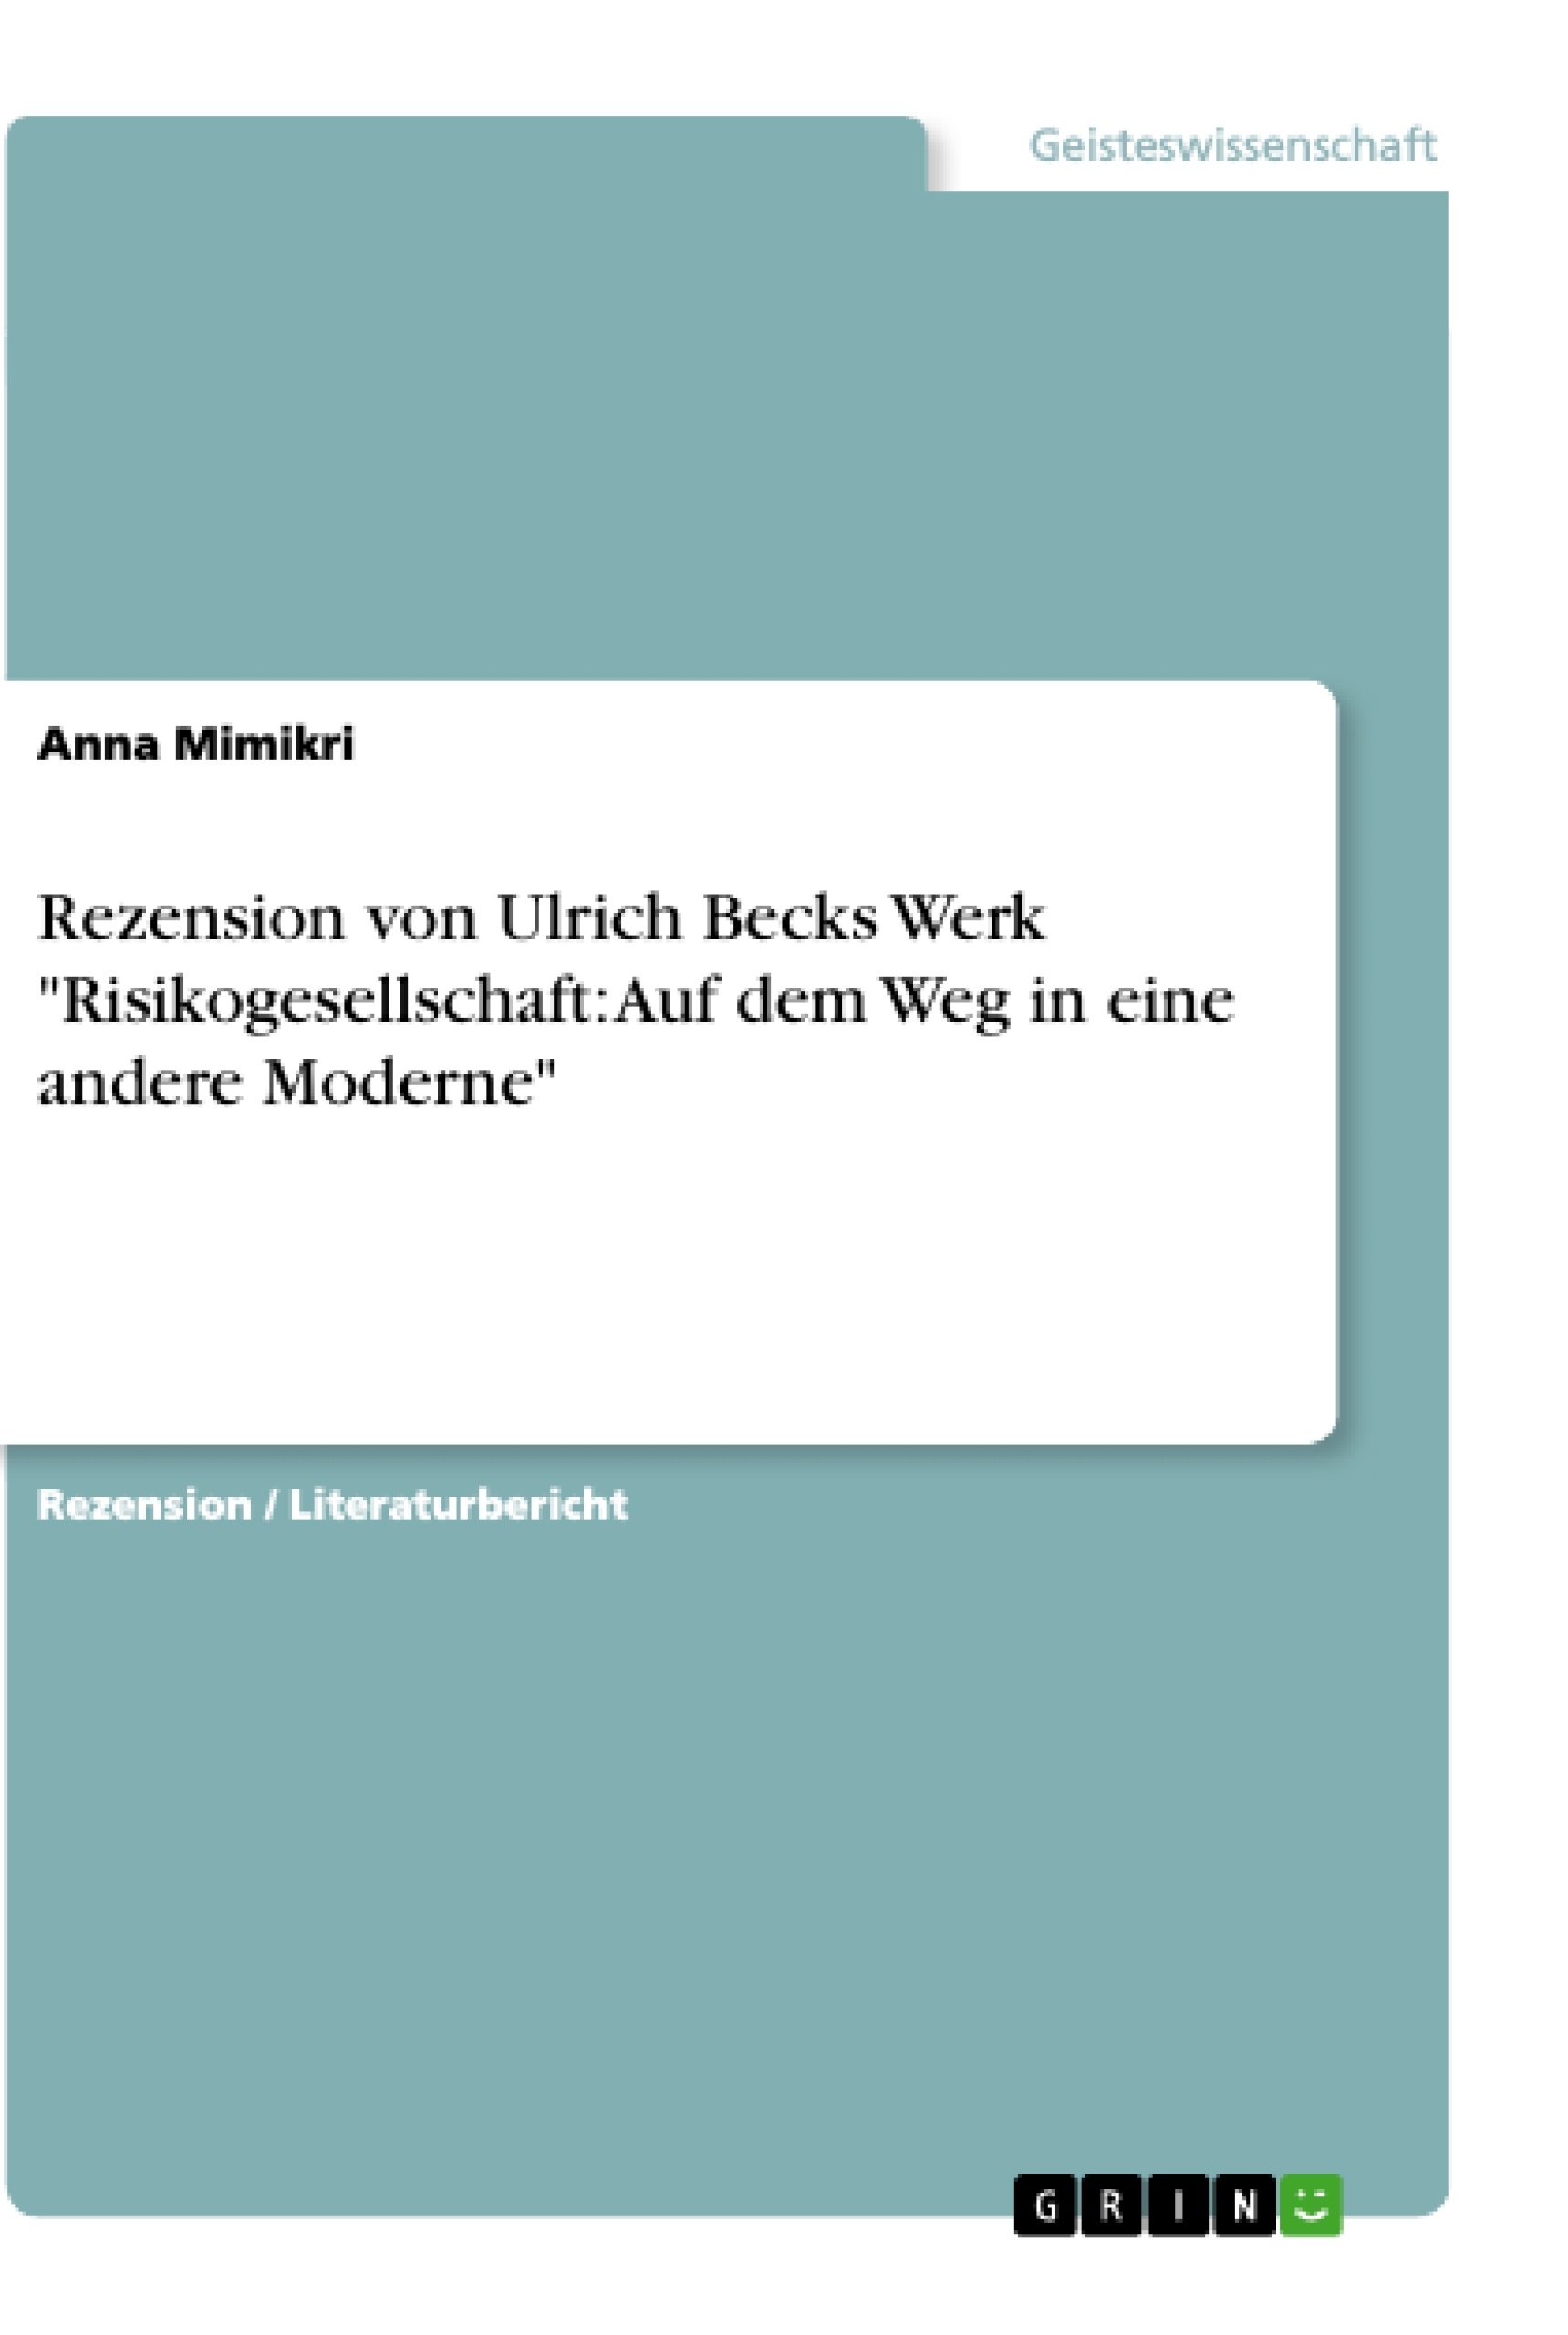 Título: Rezension von Ulrich Becks Werk "Risikogesellschaft: Auf dem Weg in eine andere Moderne"